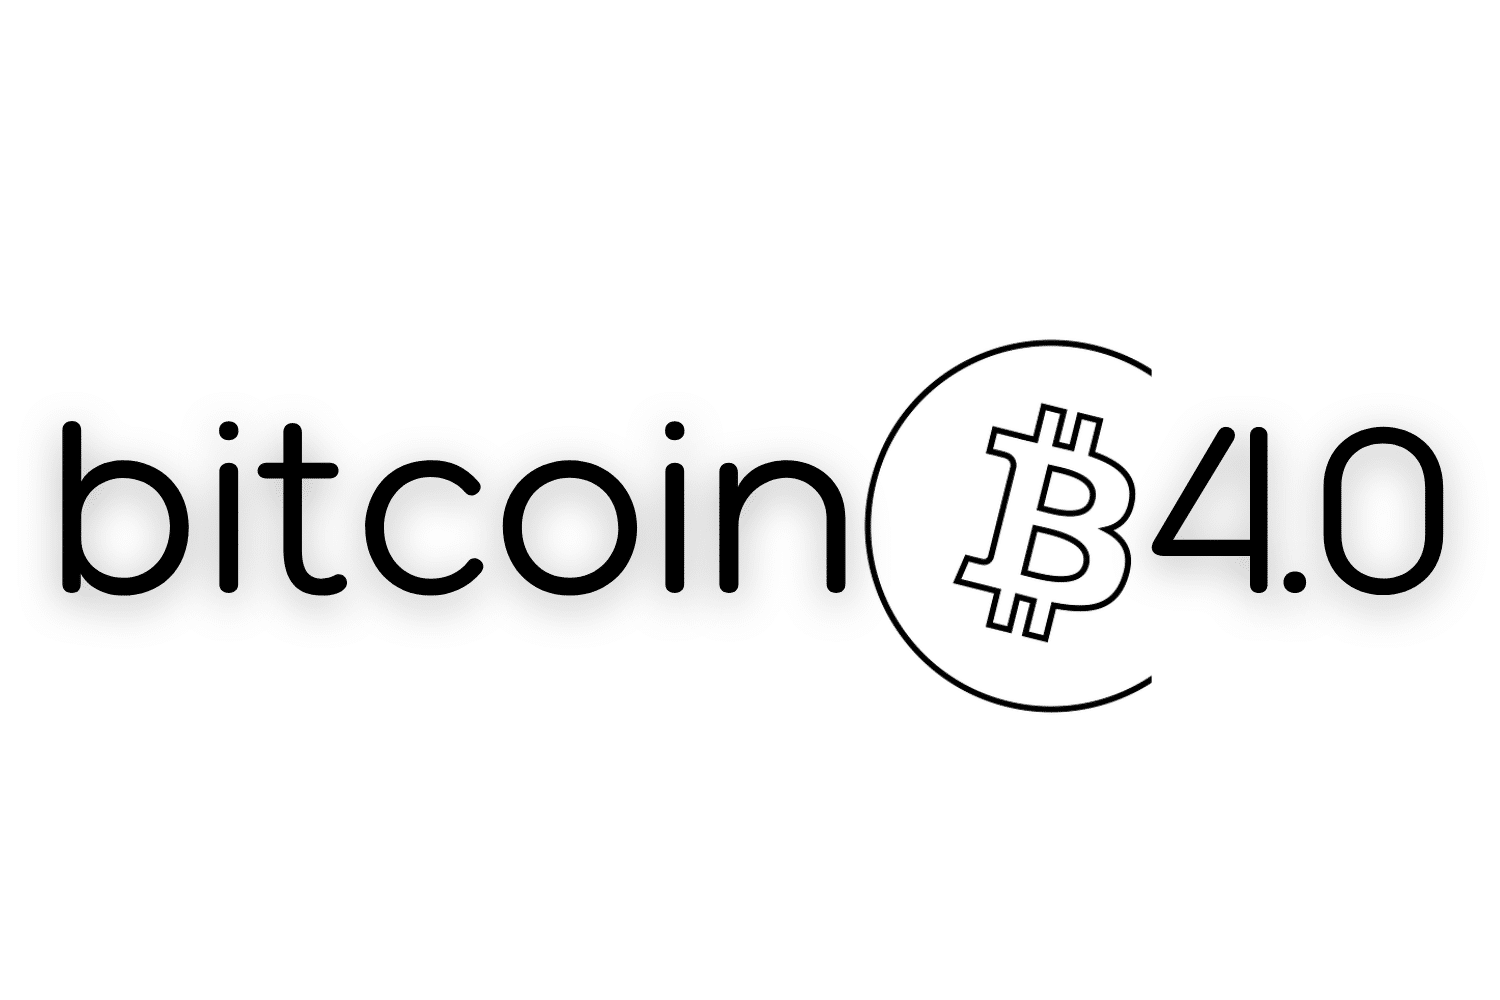 Inscrição Bitcoin 4.0